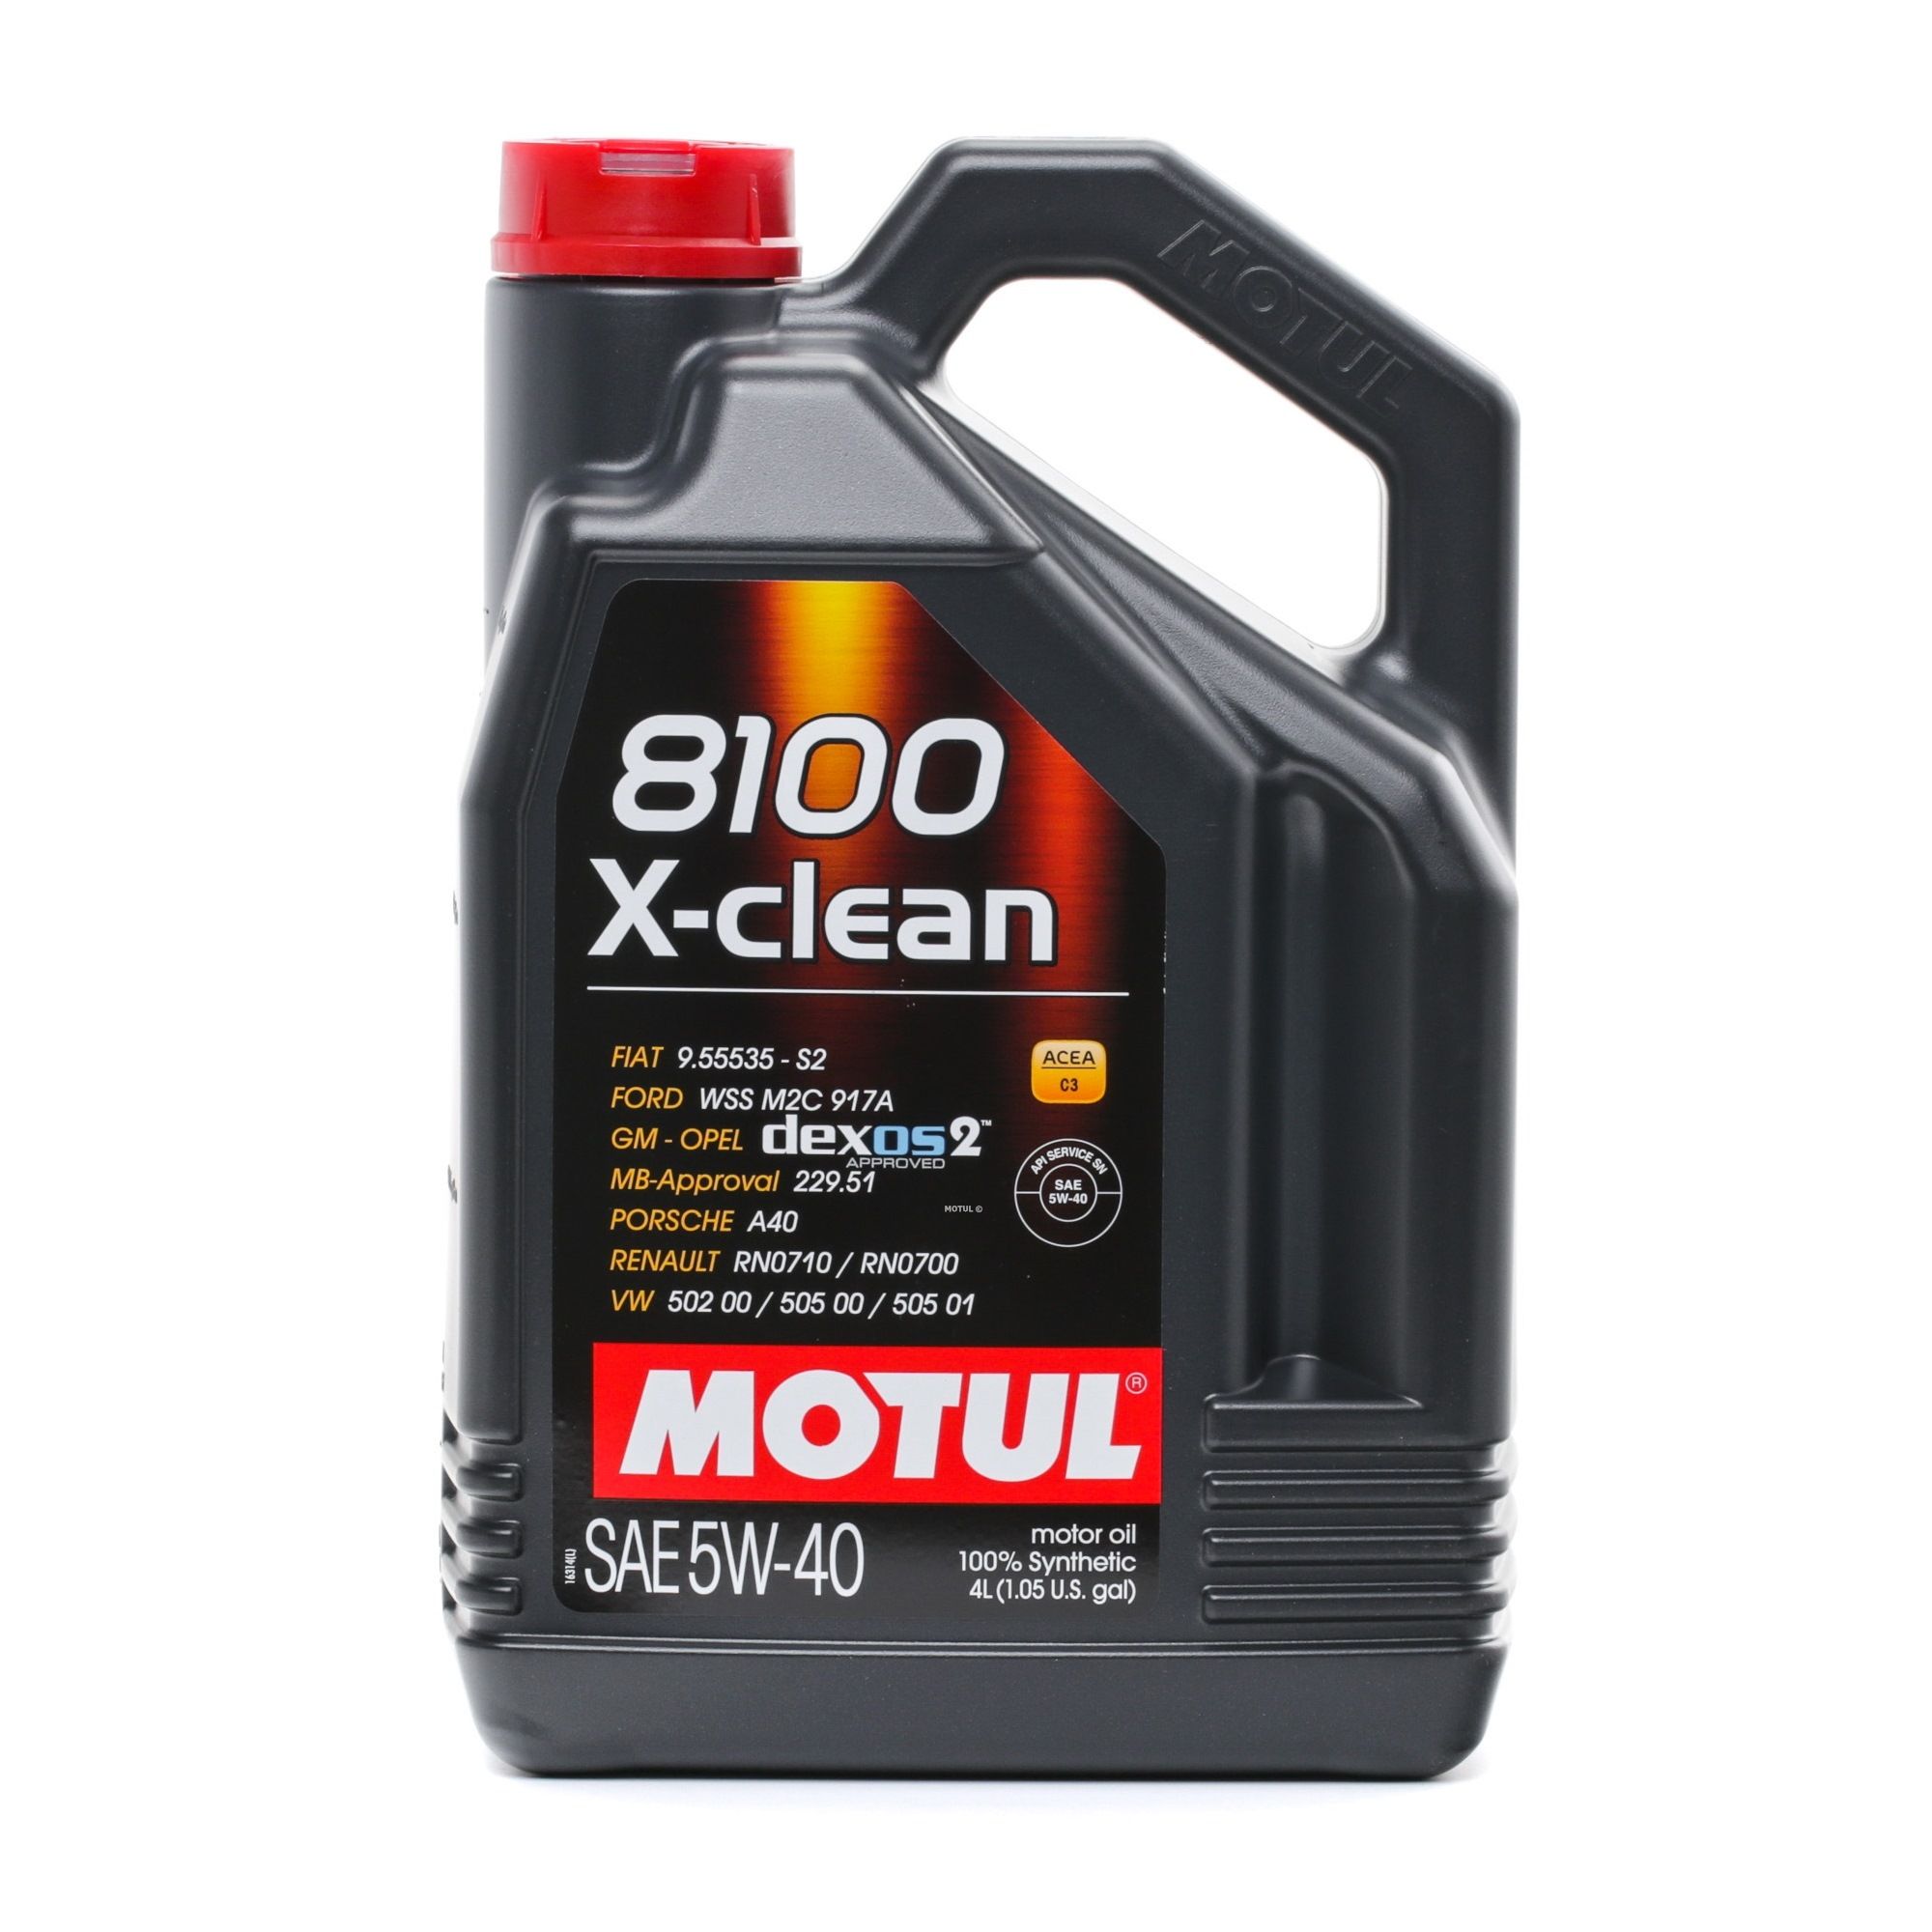 MOTUL 8100, X-clean 104720 Olio motore 5W-40, 4l